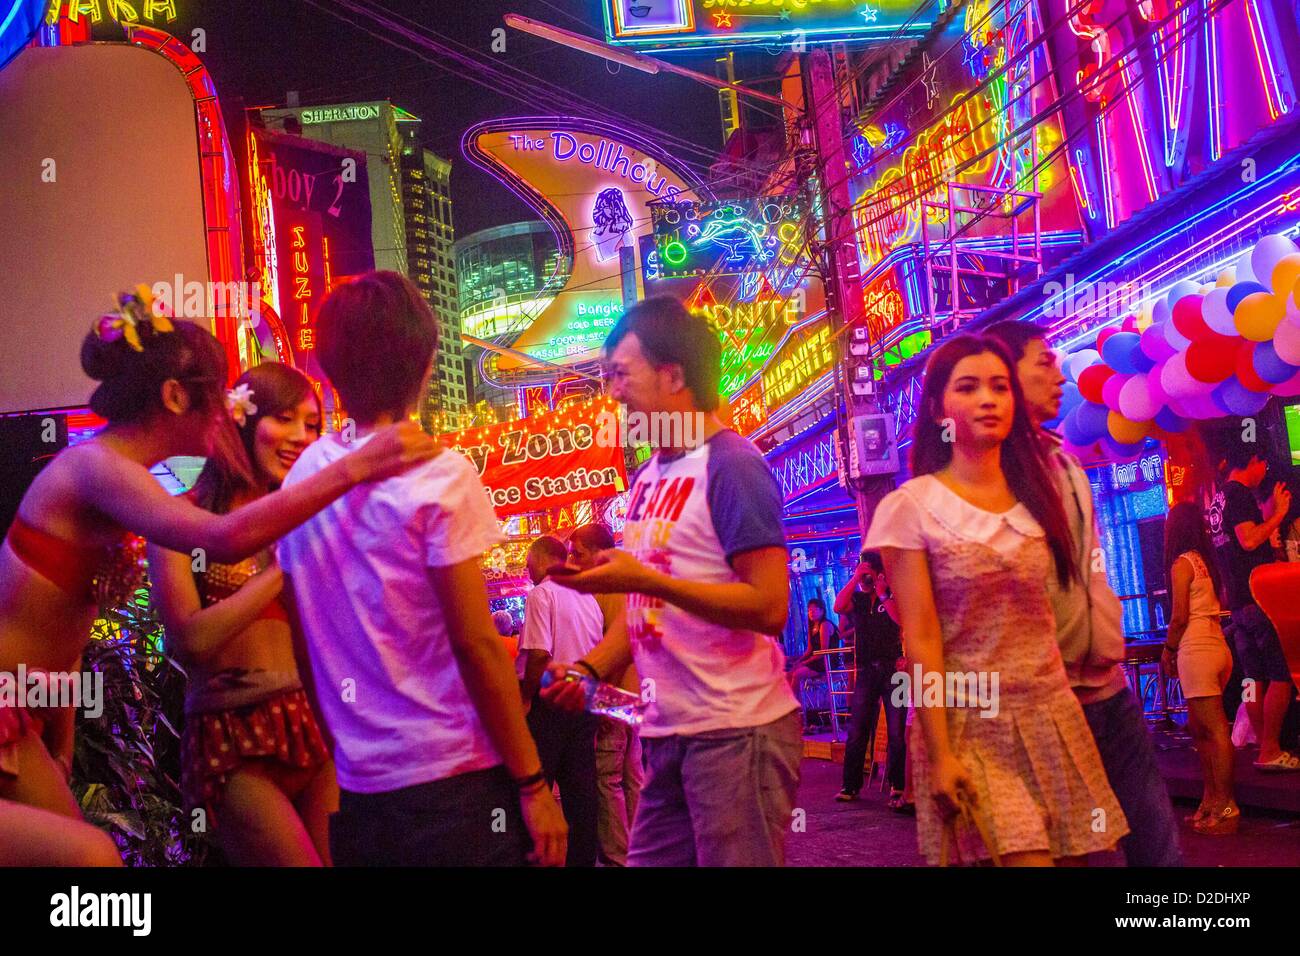 Gen 12, 2013 - Bangkok, Thailandia - Ladyboy (transgendered) animatori flirt con i clienti cercano di attirare nell'Cacatua bar in Soi Cowboy quartiere a luci rosse di Bangkok. In Thai, la ladyboys sono chiamati kathoey. Molti lavorano in divertimento e vita notturna e settori dell'economia thailandese. La prostituzione in Thailandia è illegale, anche se in pratica è tollerata e in parte disciplinati. La prostituzione è attuata apertamente in tutto il paese. Il numero di prostitute è difficile da determinare, le stime variano ampiamente. Poiché la guerra del Vietnam, Thailandia ha acquisito una notorietà internazionale tra Foto Stock